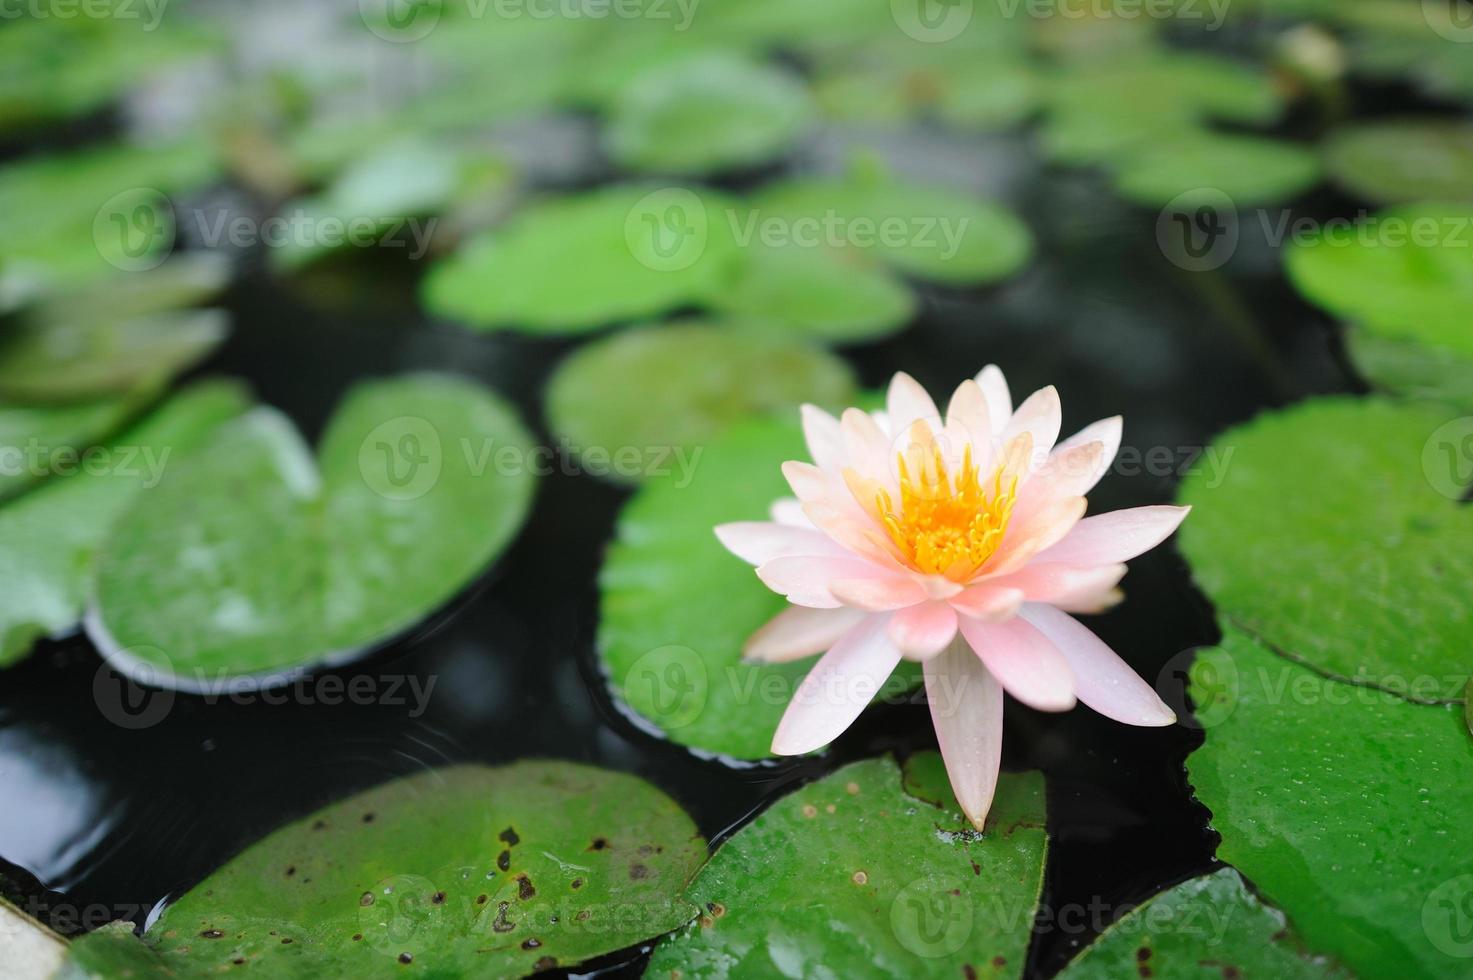 cette belle fleur de nénuphar ou de lotus photo